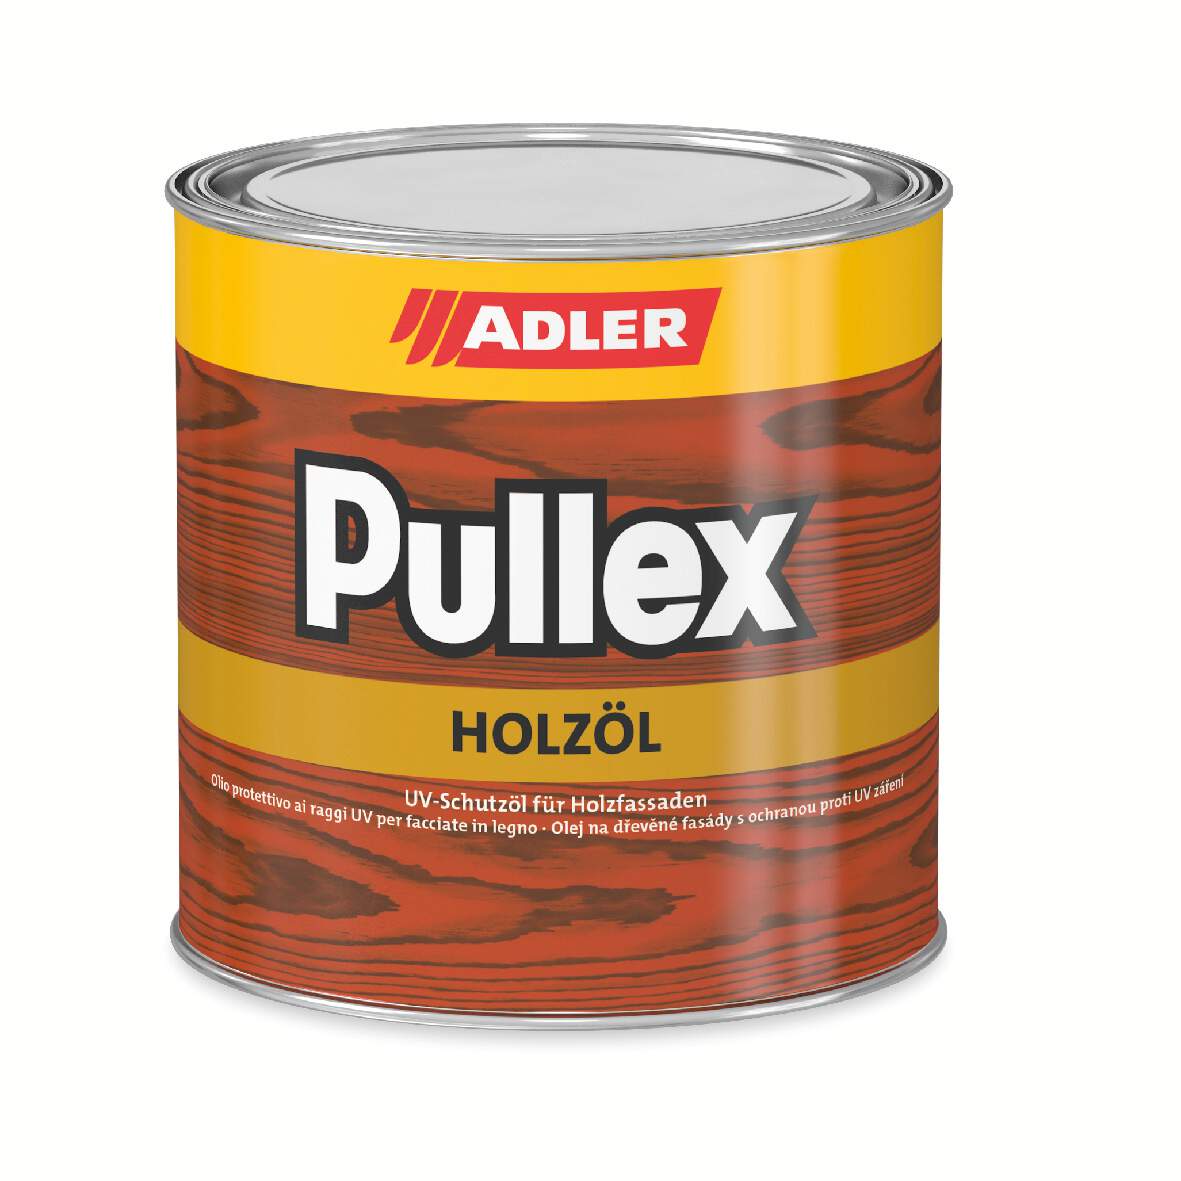 1122504 - Pullex-Holzöl